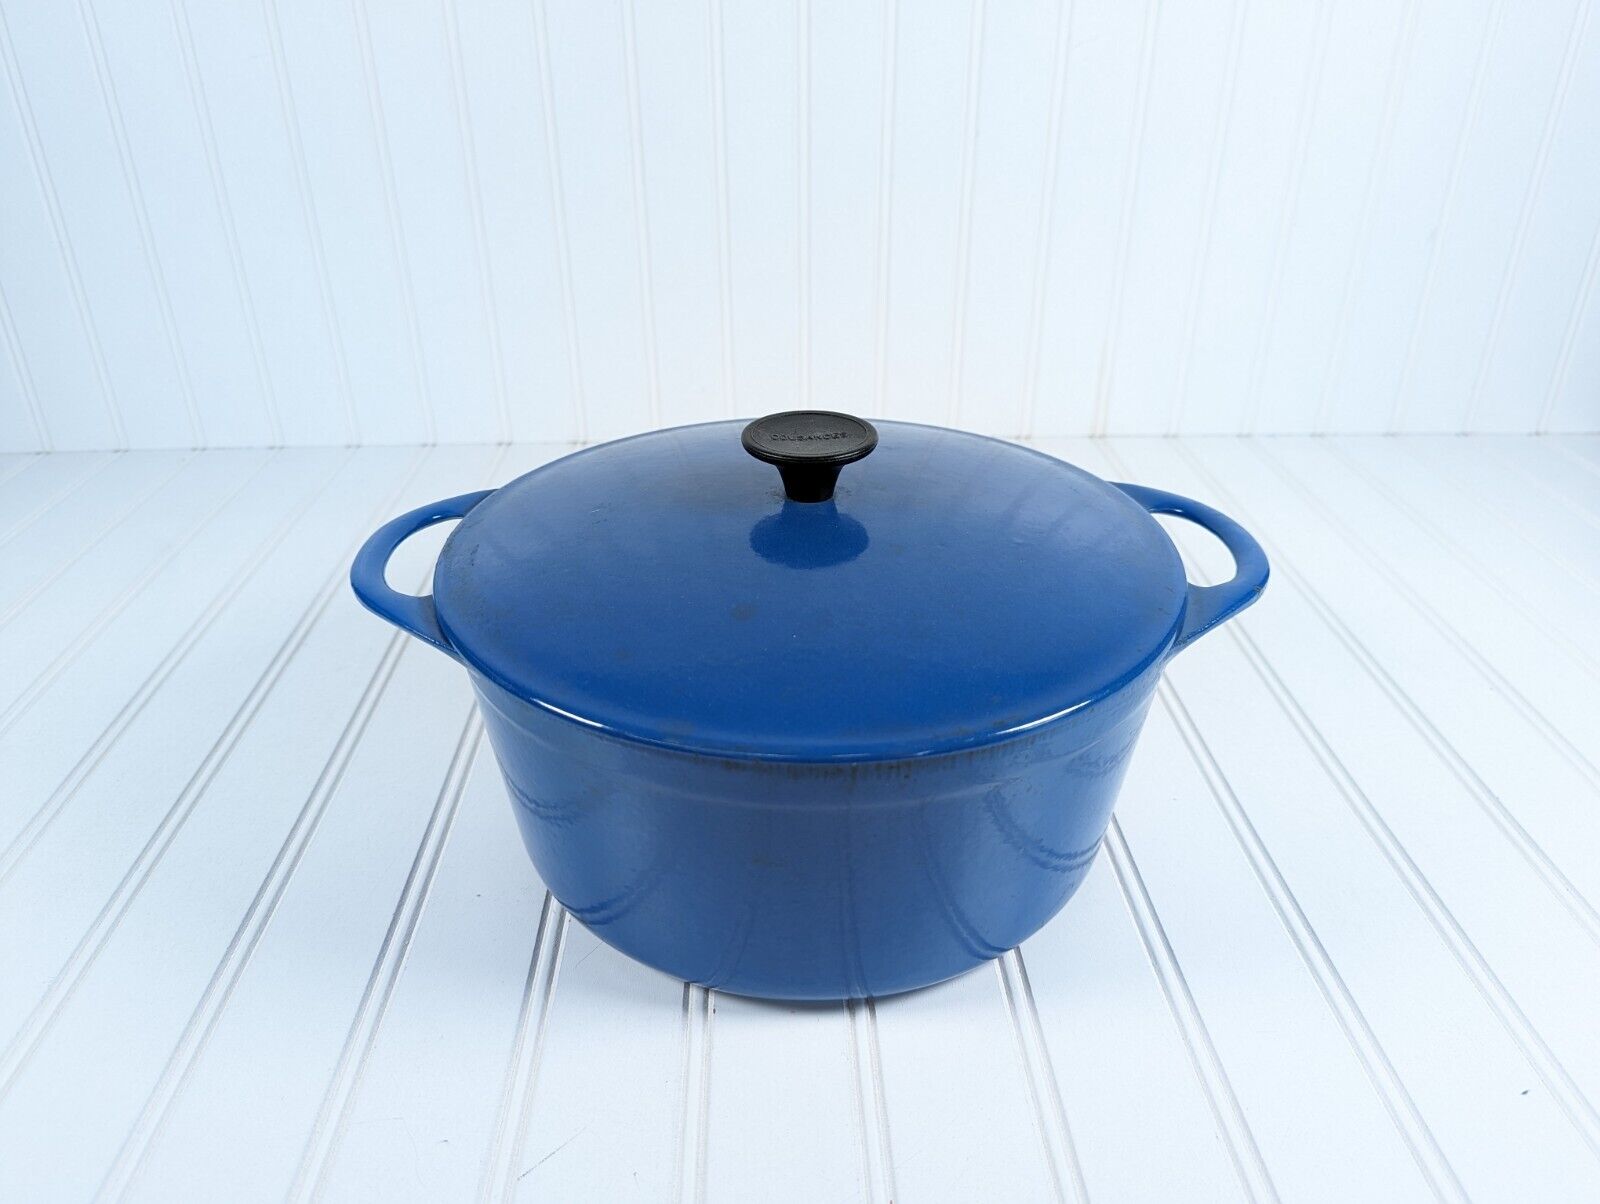 Cousances Le Creuset Blue #24 Enamel Cast Iron Dutch Oven Made In France